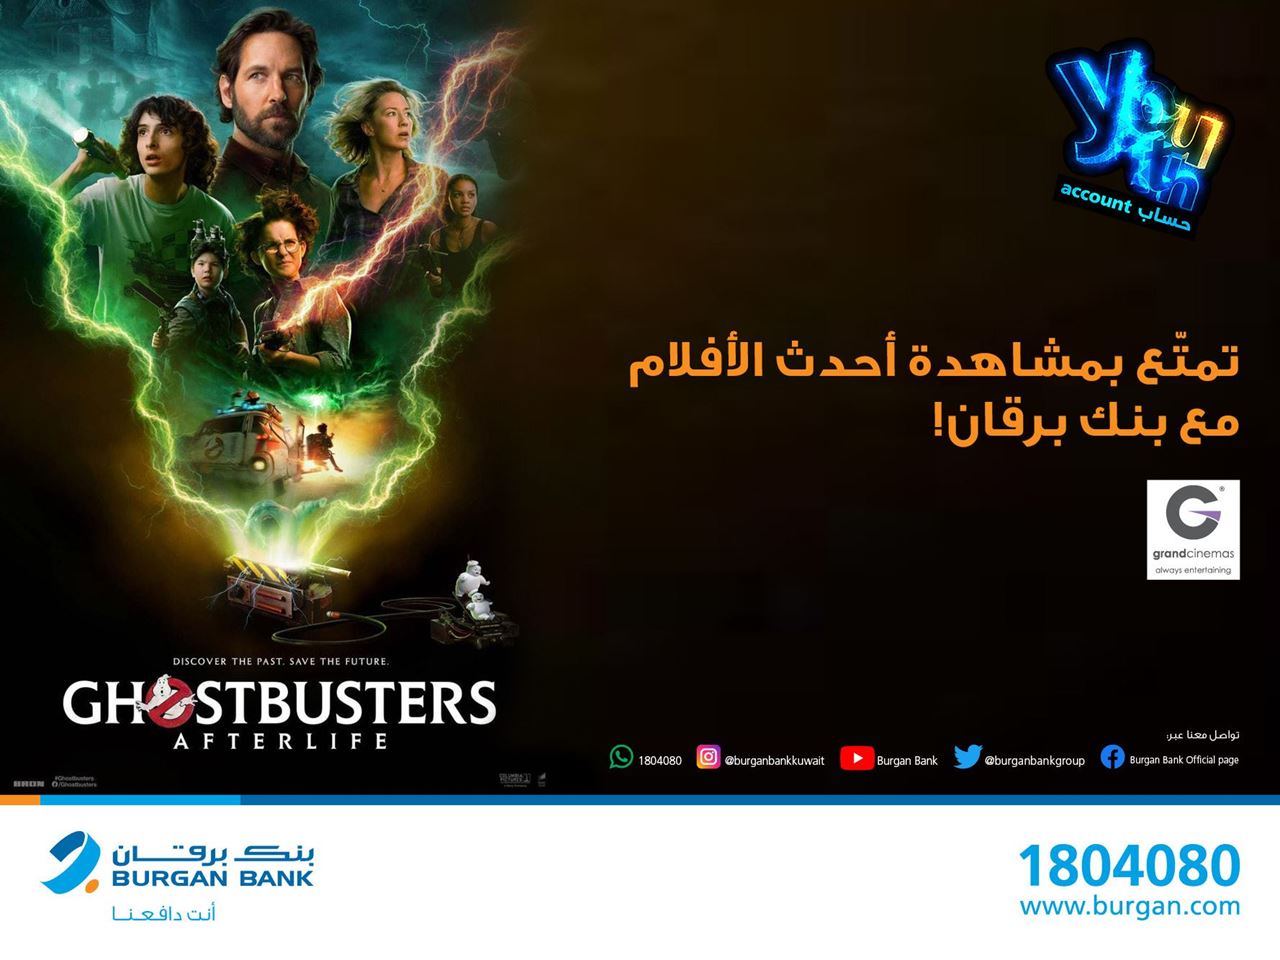 بنك برقان يدعوا عملاء حساب“Youth” للشباب لحضور العروض الحصرية لفيلم "Ghostbusters" مجاناً